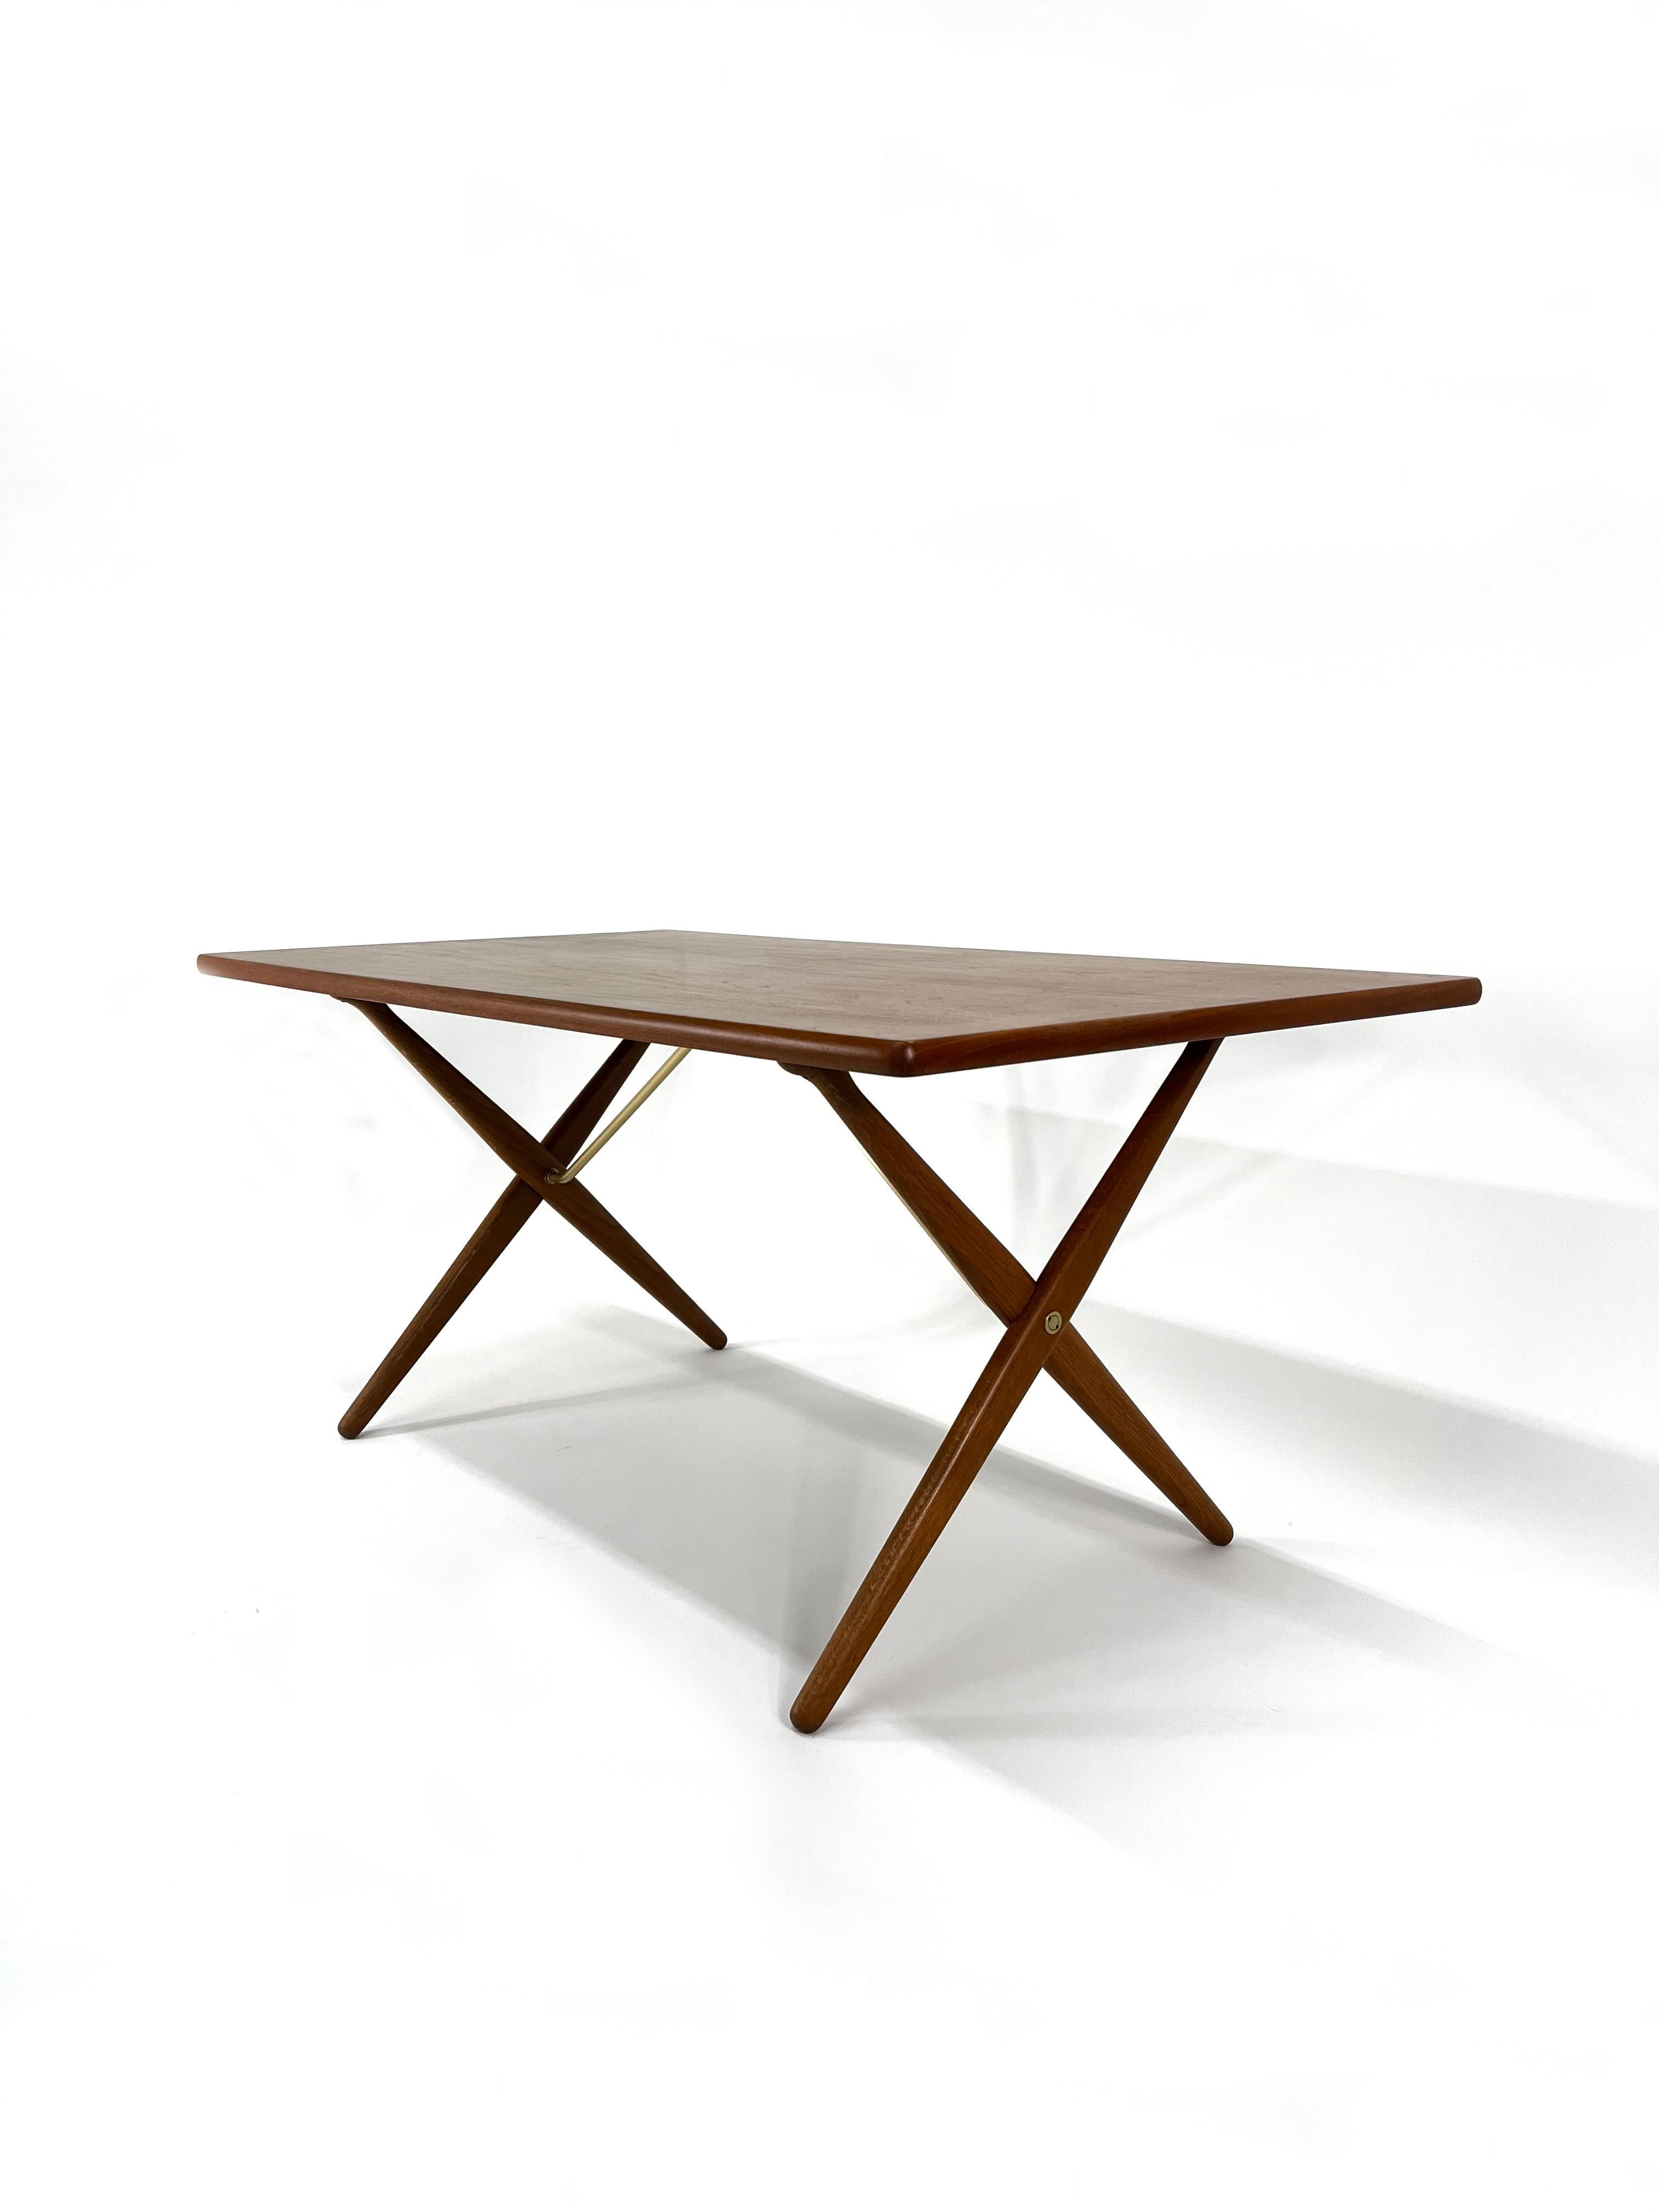 Einzigartig schöner Esstisch mit gekreuzten Beinen, entworfen von Hans J. Wegner für Andreas Tuck, in Teak, Eiche und Messing, auch als Sabre-Tisch bekannt.  Wegner entwarf dieses schöne und funktionale Möbelstück, das aus der Nähe betrachtet sehr